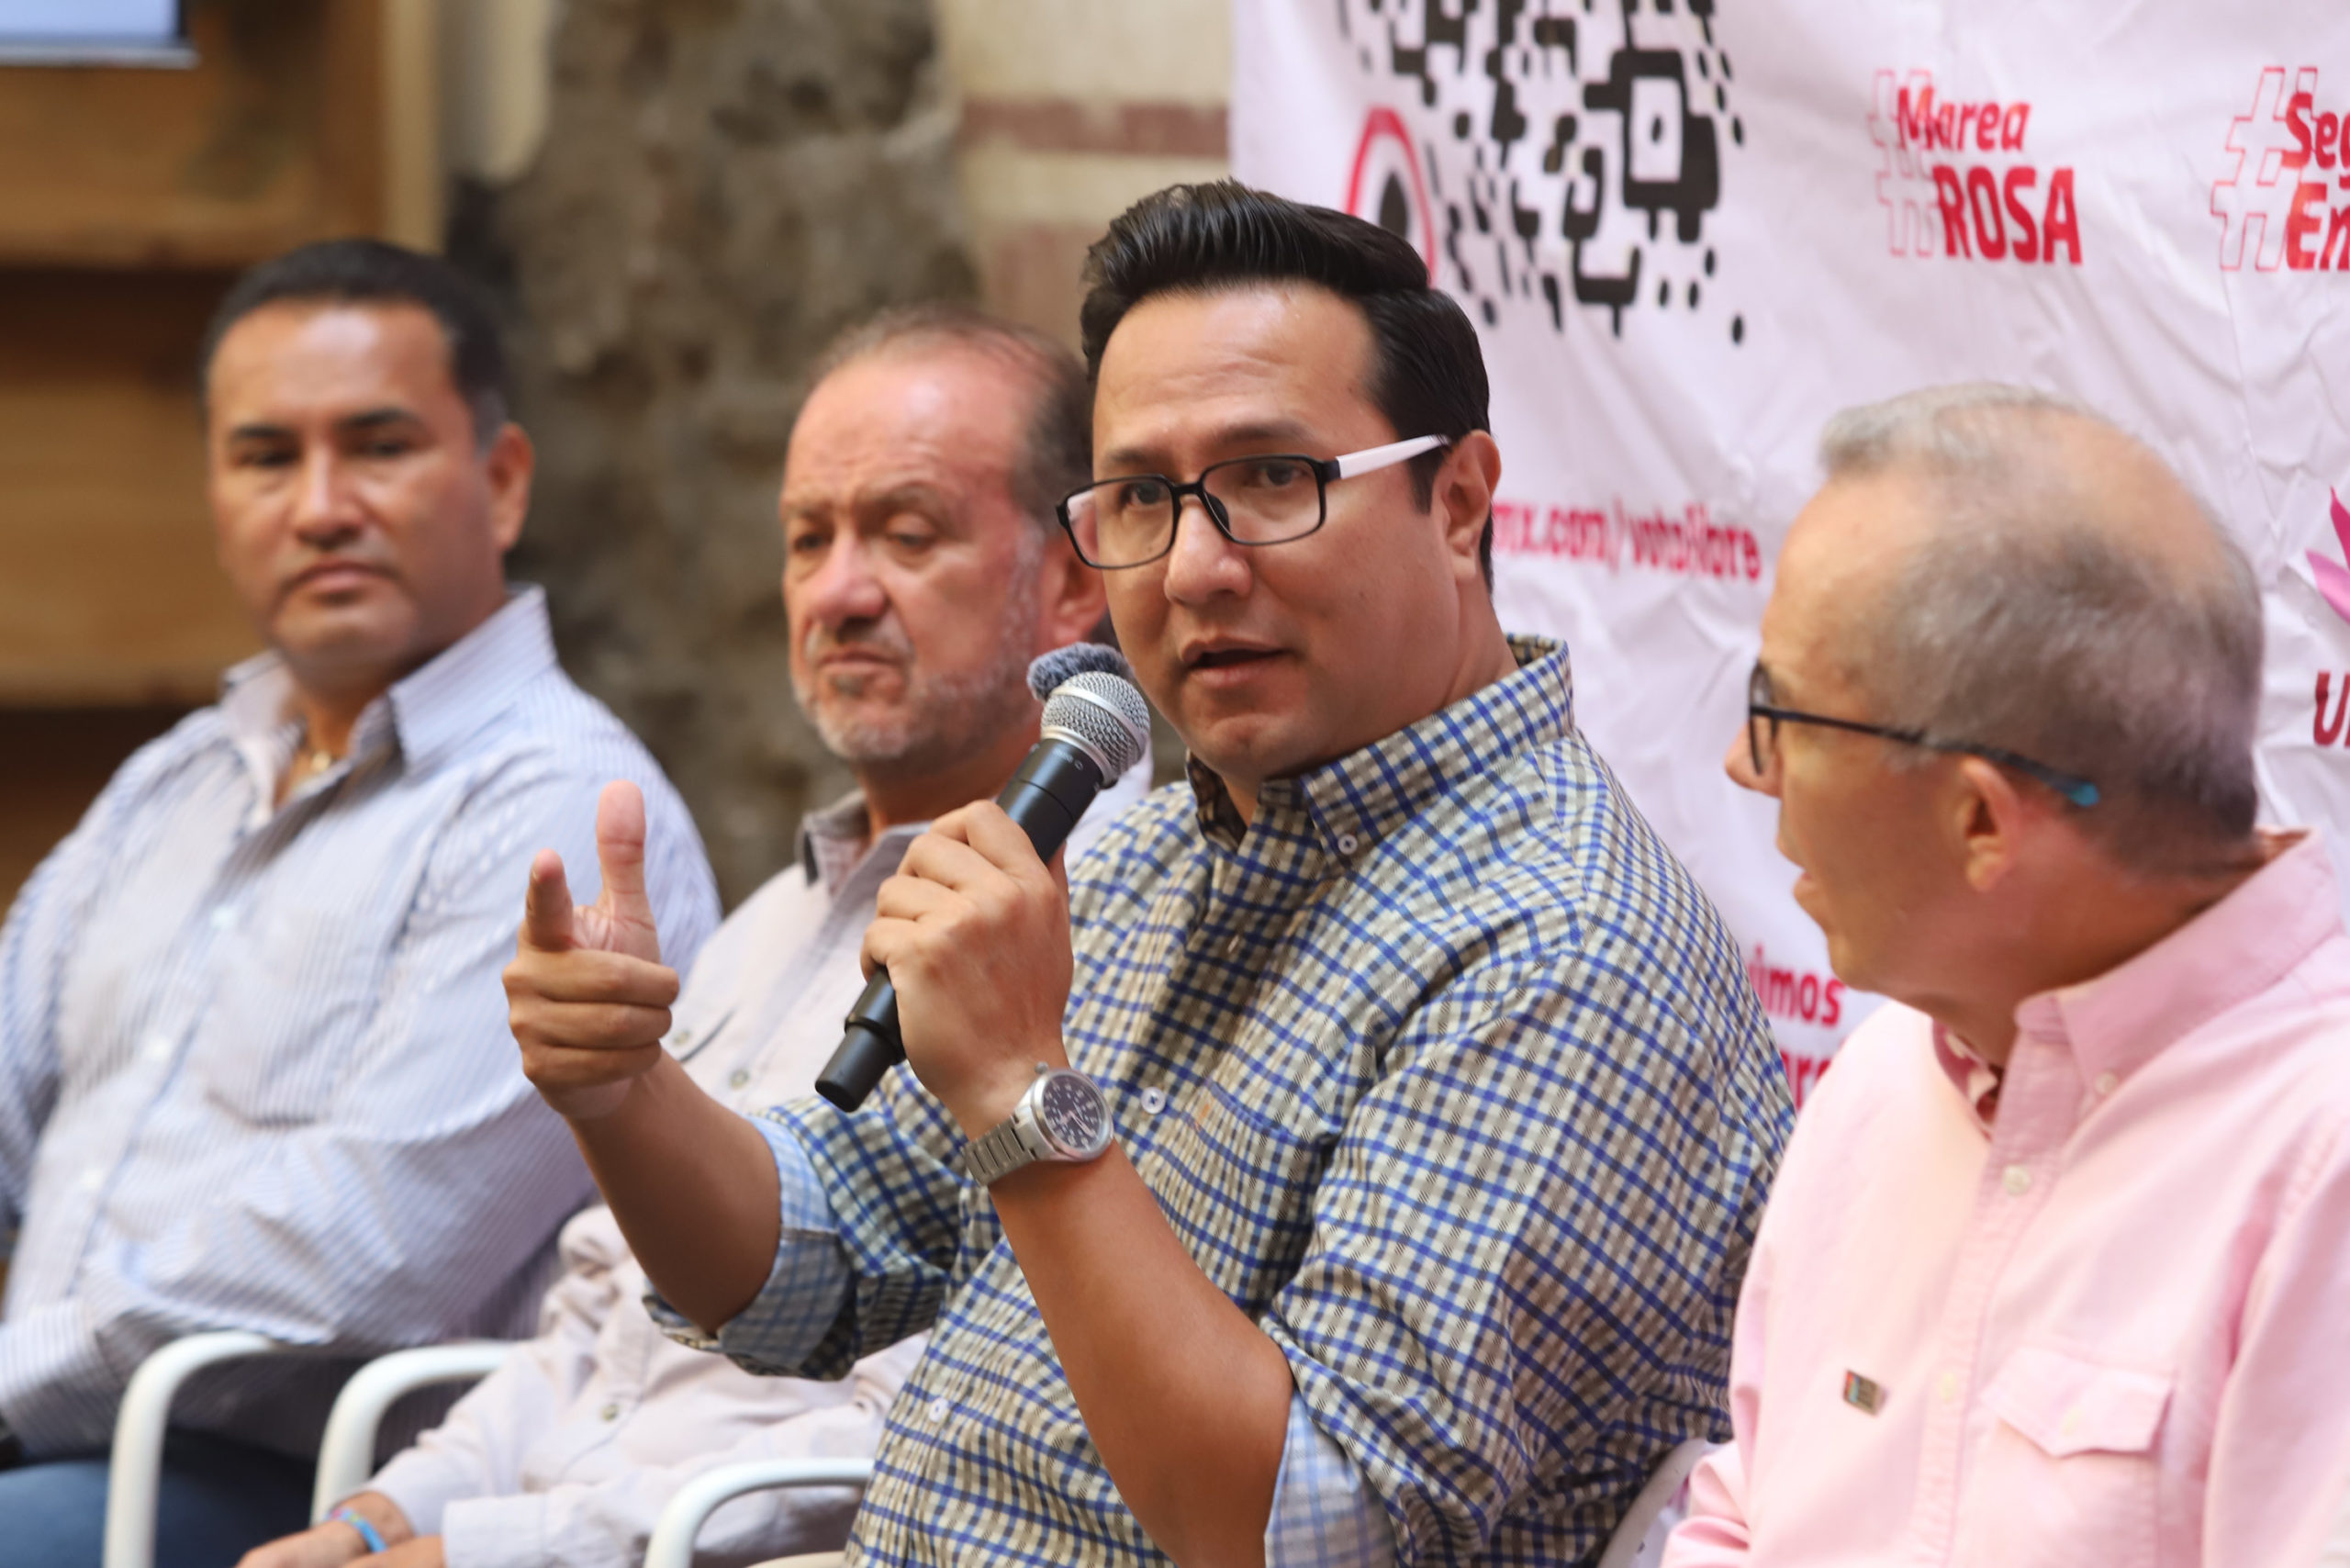 Anuncia agrupación Unidos una nueva marcha de la Marea Rosa con Eduardo Rivera y Mario Riestra